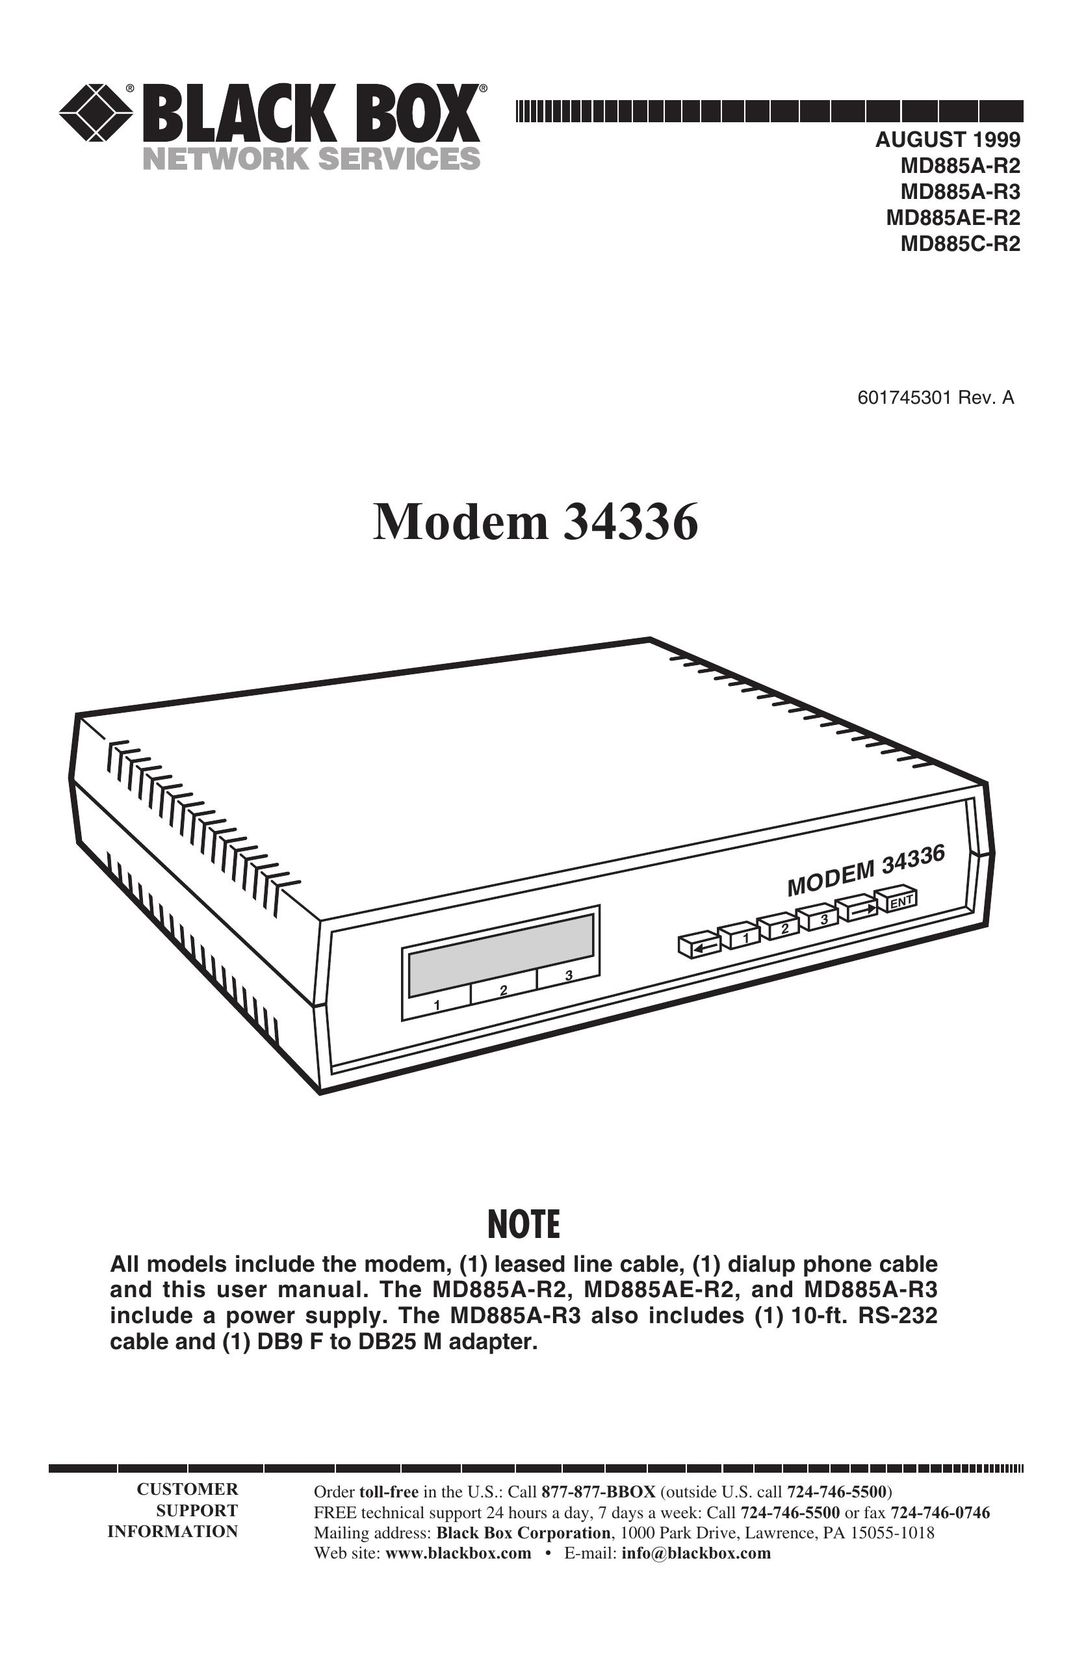 Black Box MD885A-R3 Modem User Manual